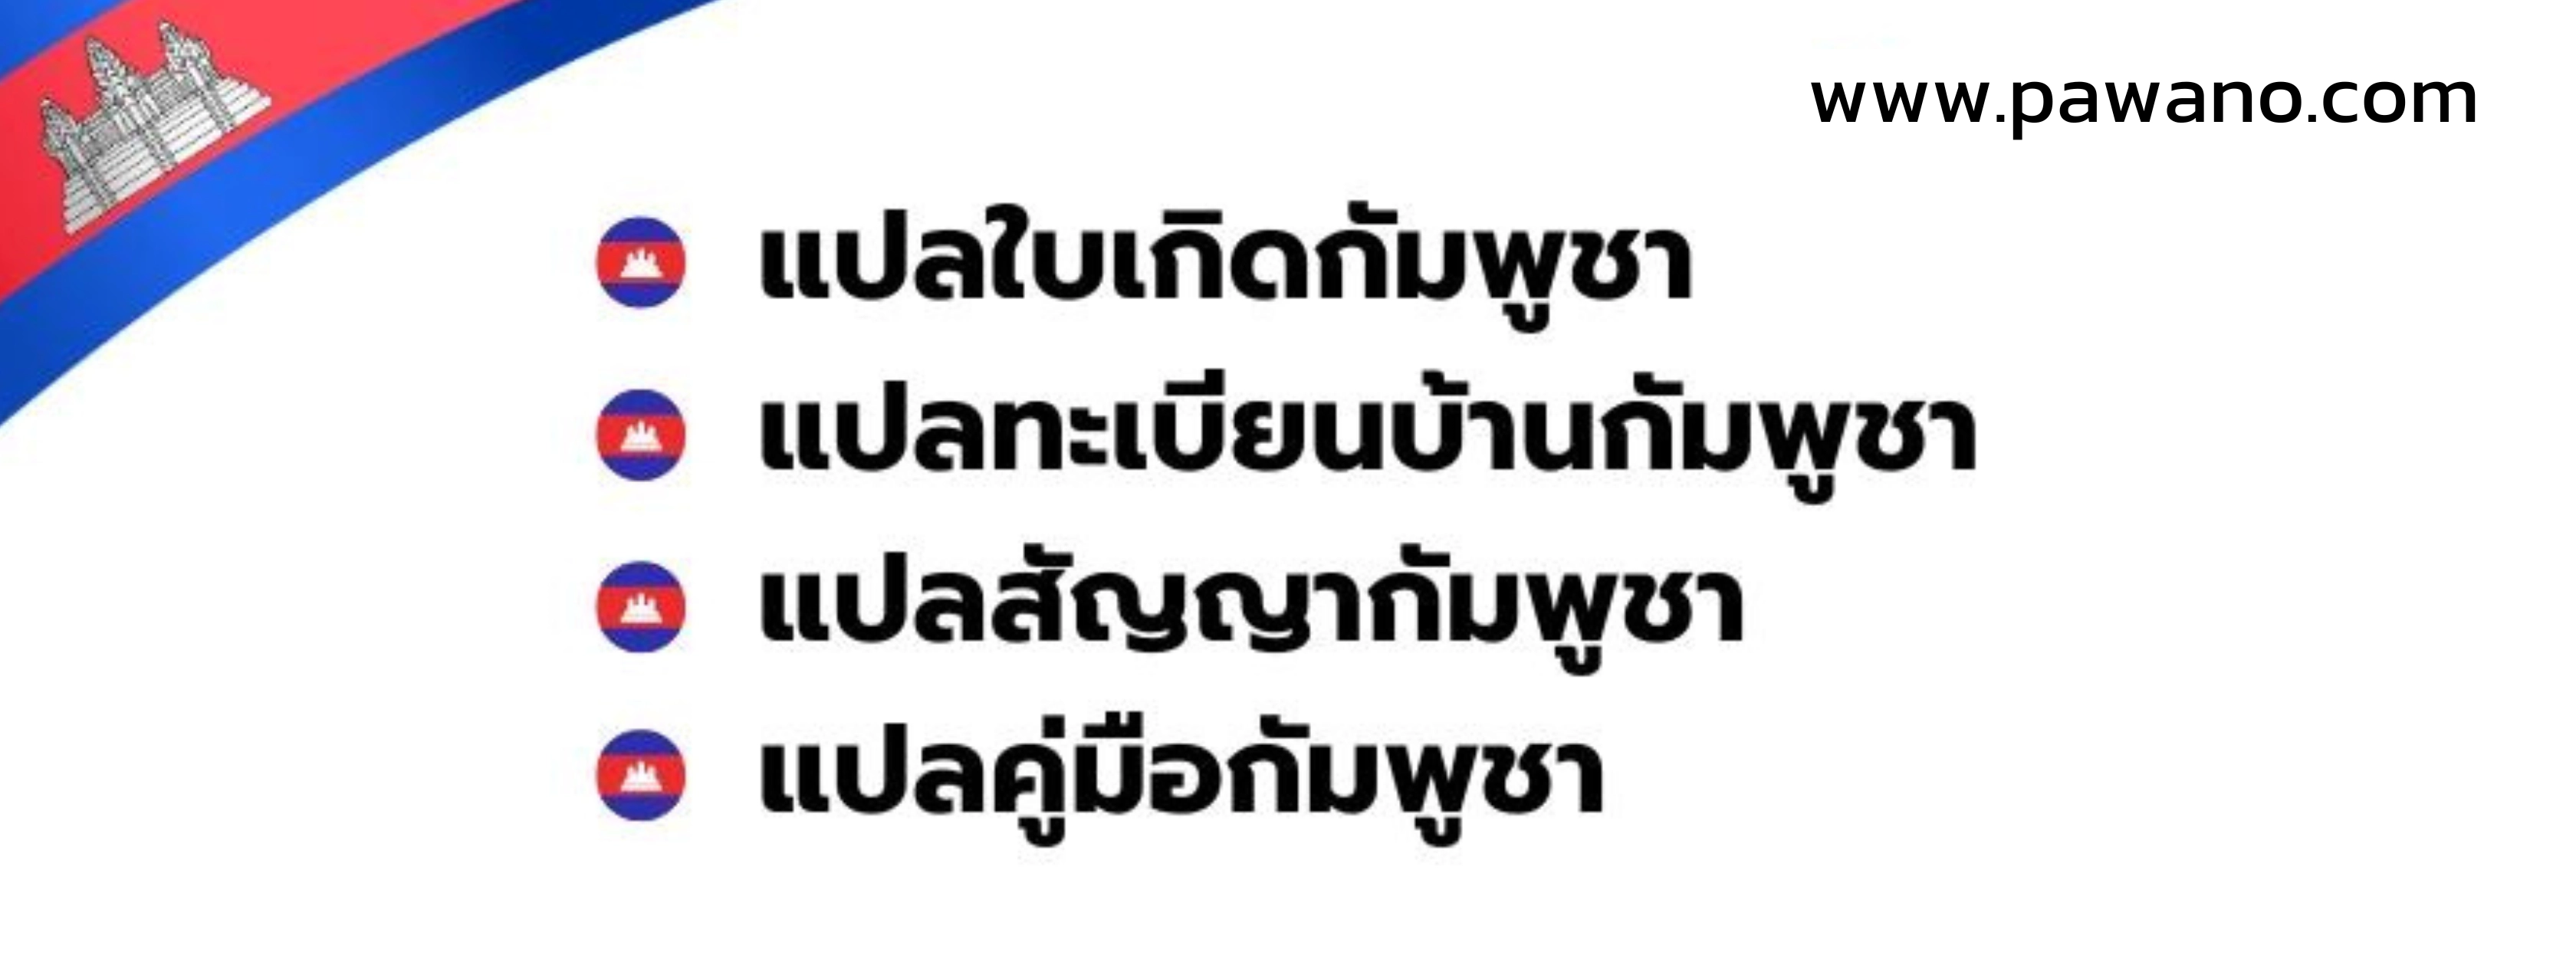 แปลภาษากัมพูชาเป็นไทย